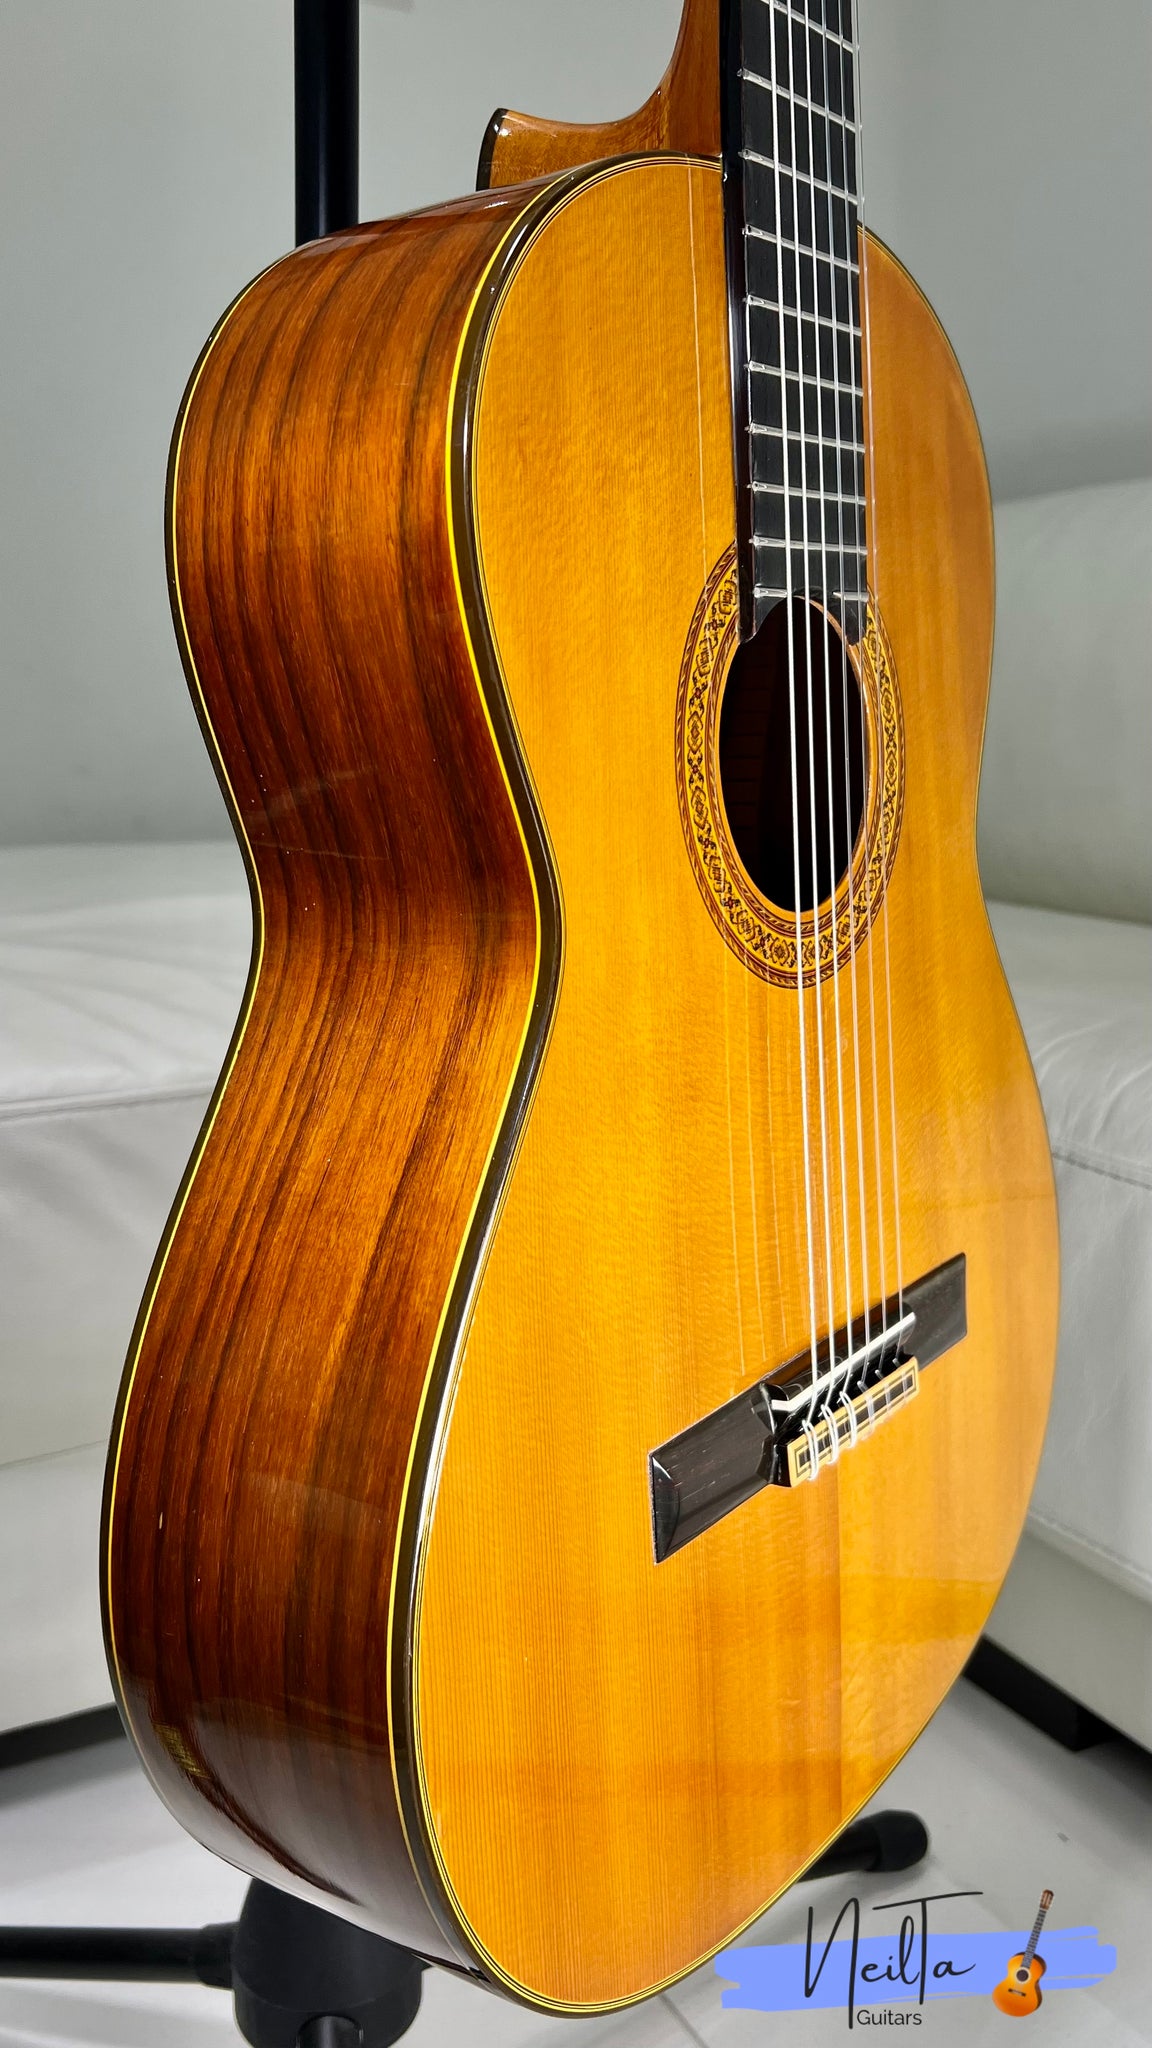 Shinano SC-20 (1972) Handmade Concert Classical Guitar – Neil Ta Music